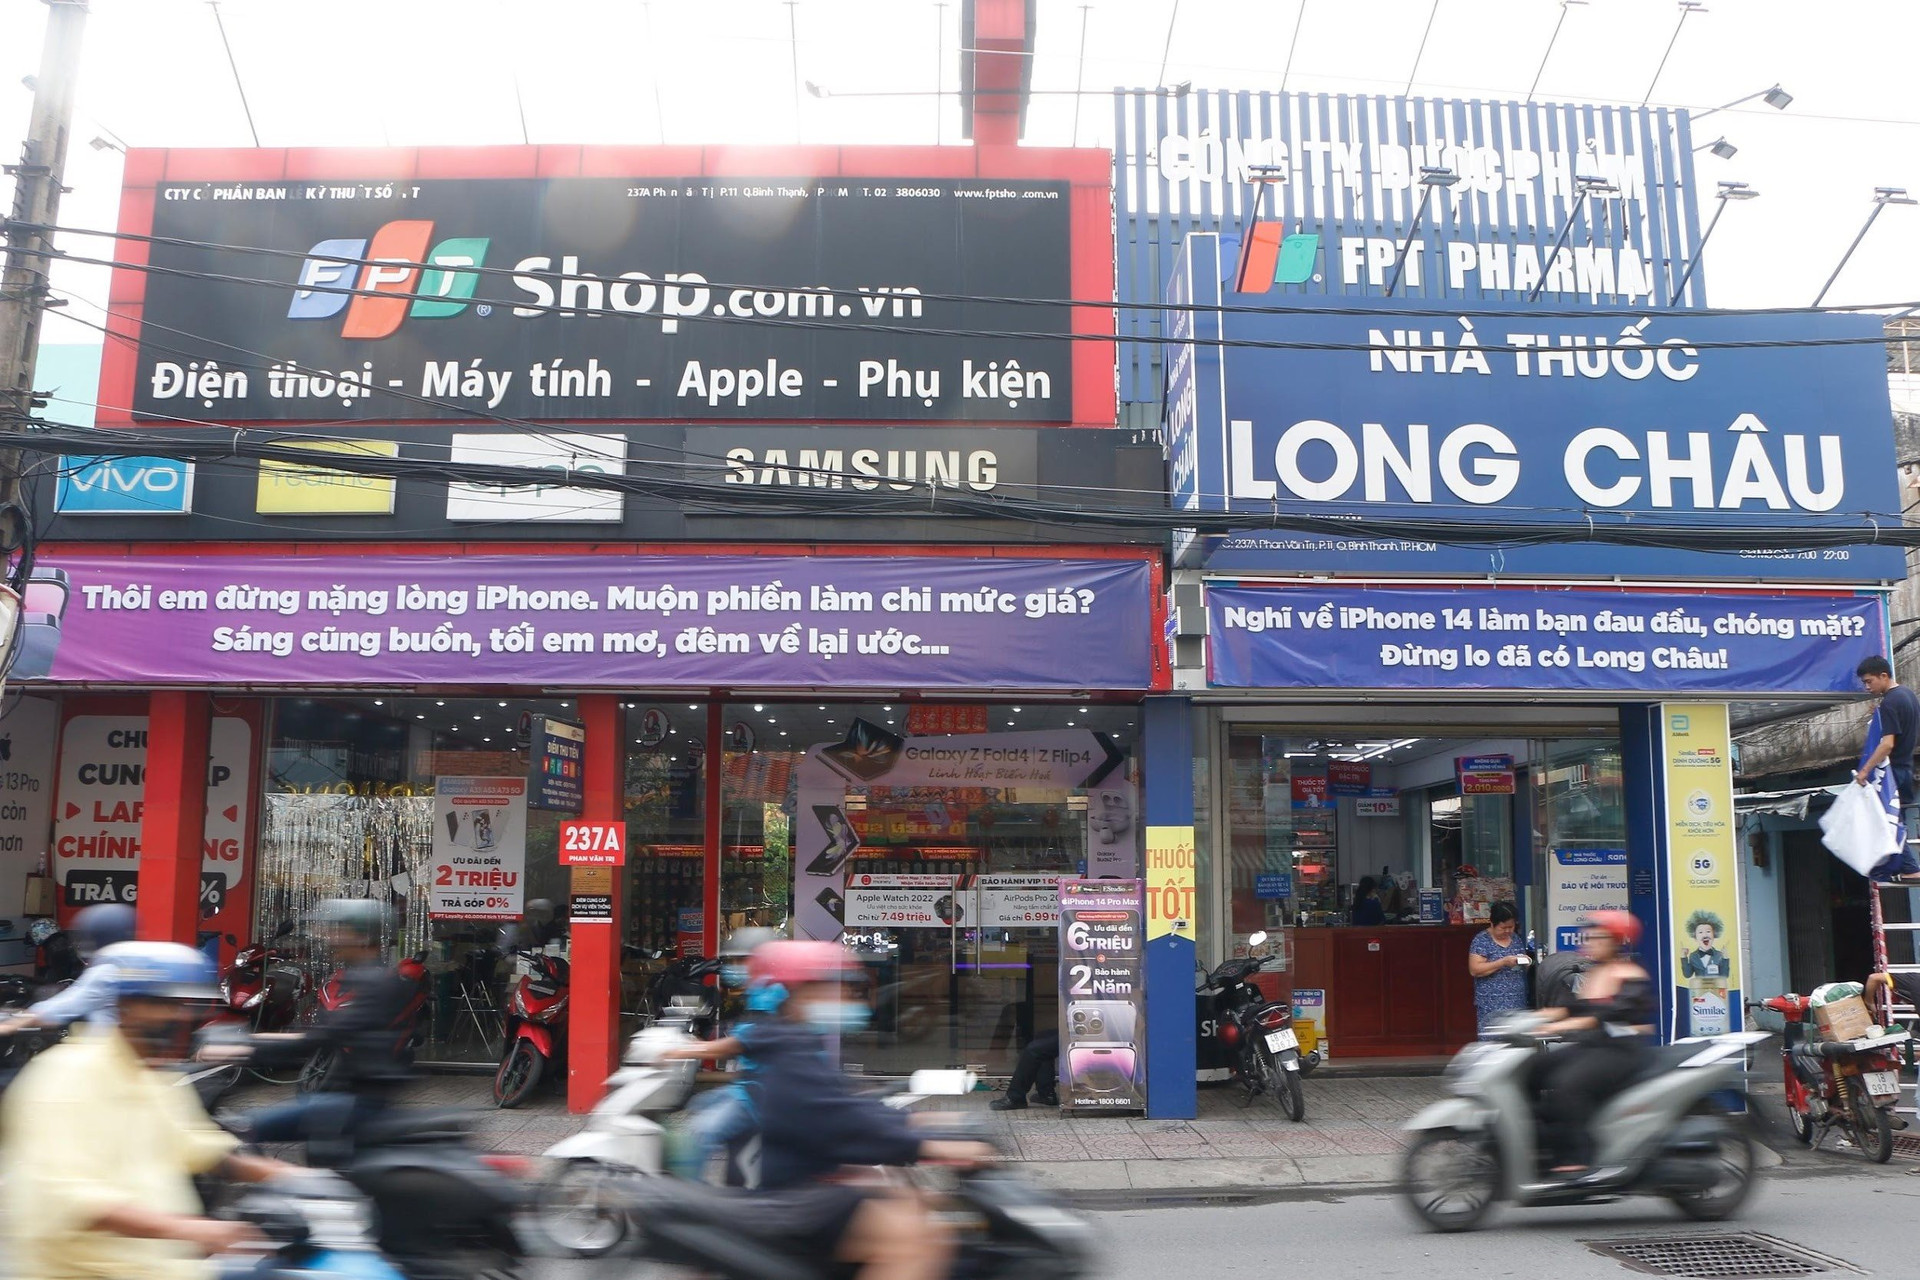 Long Châu tăng trưởng 60%, FPT Retail phải thưởng hiệu quả kinh doanh vượt xa kế hoạch - Ảnh 1.